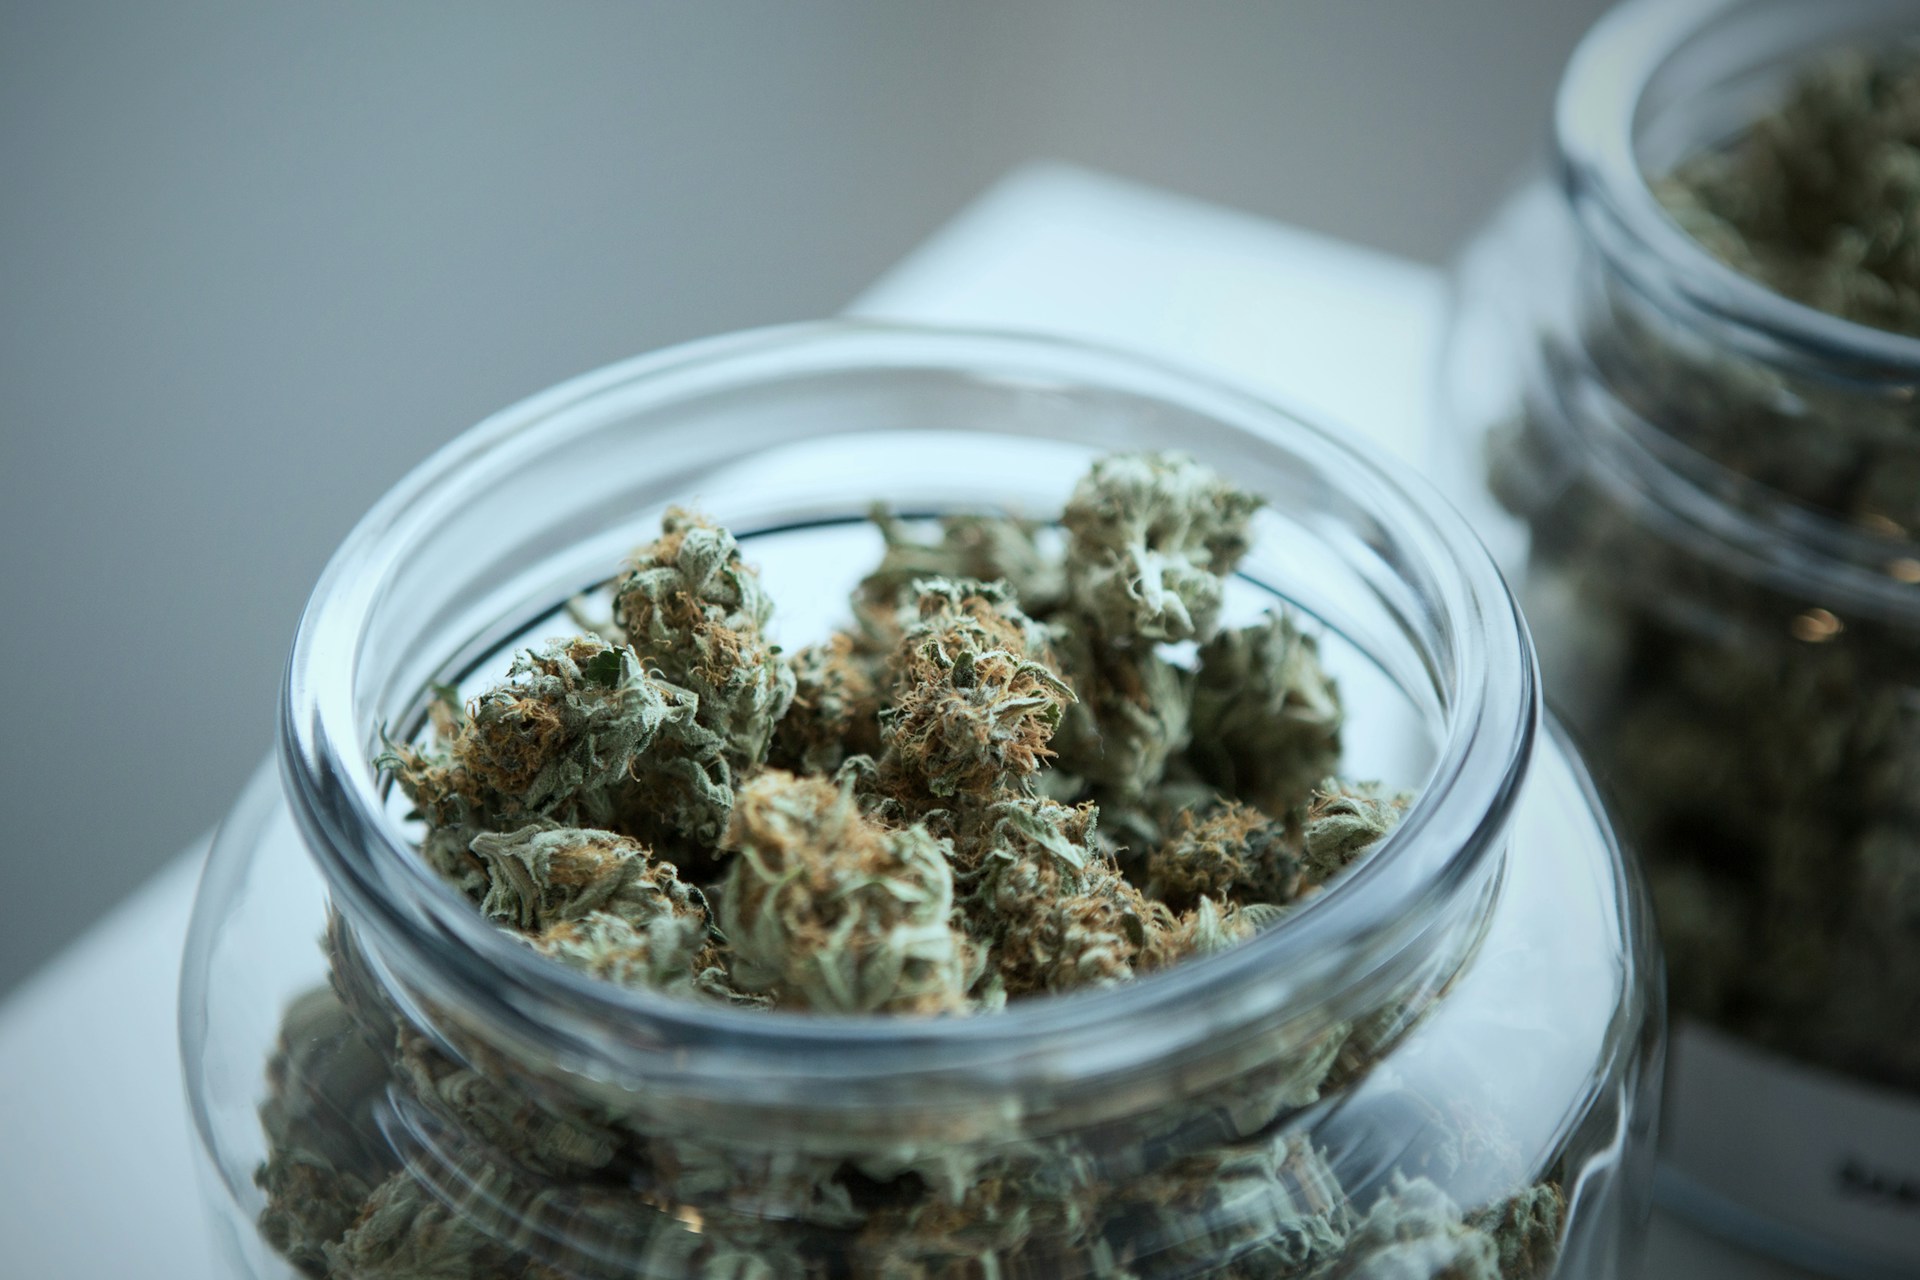 Jak przechowywać marihuanę medyczną w domu?